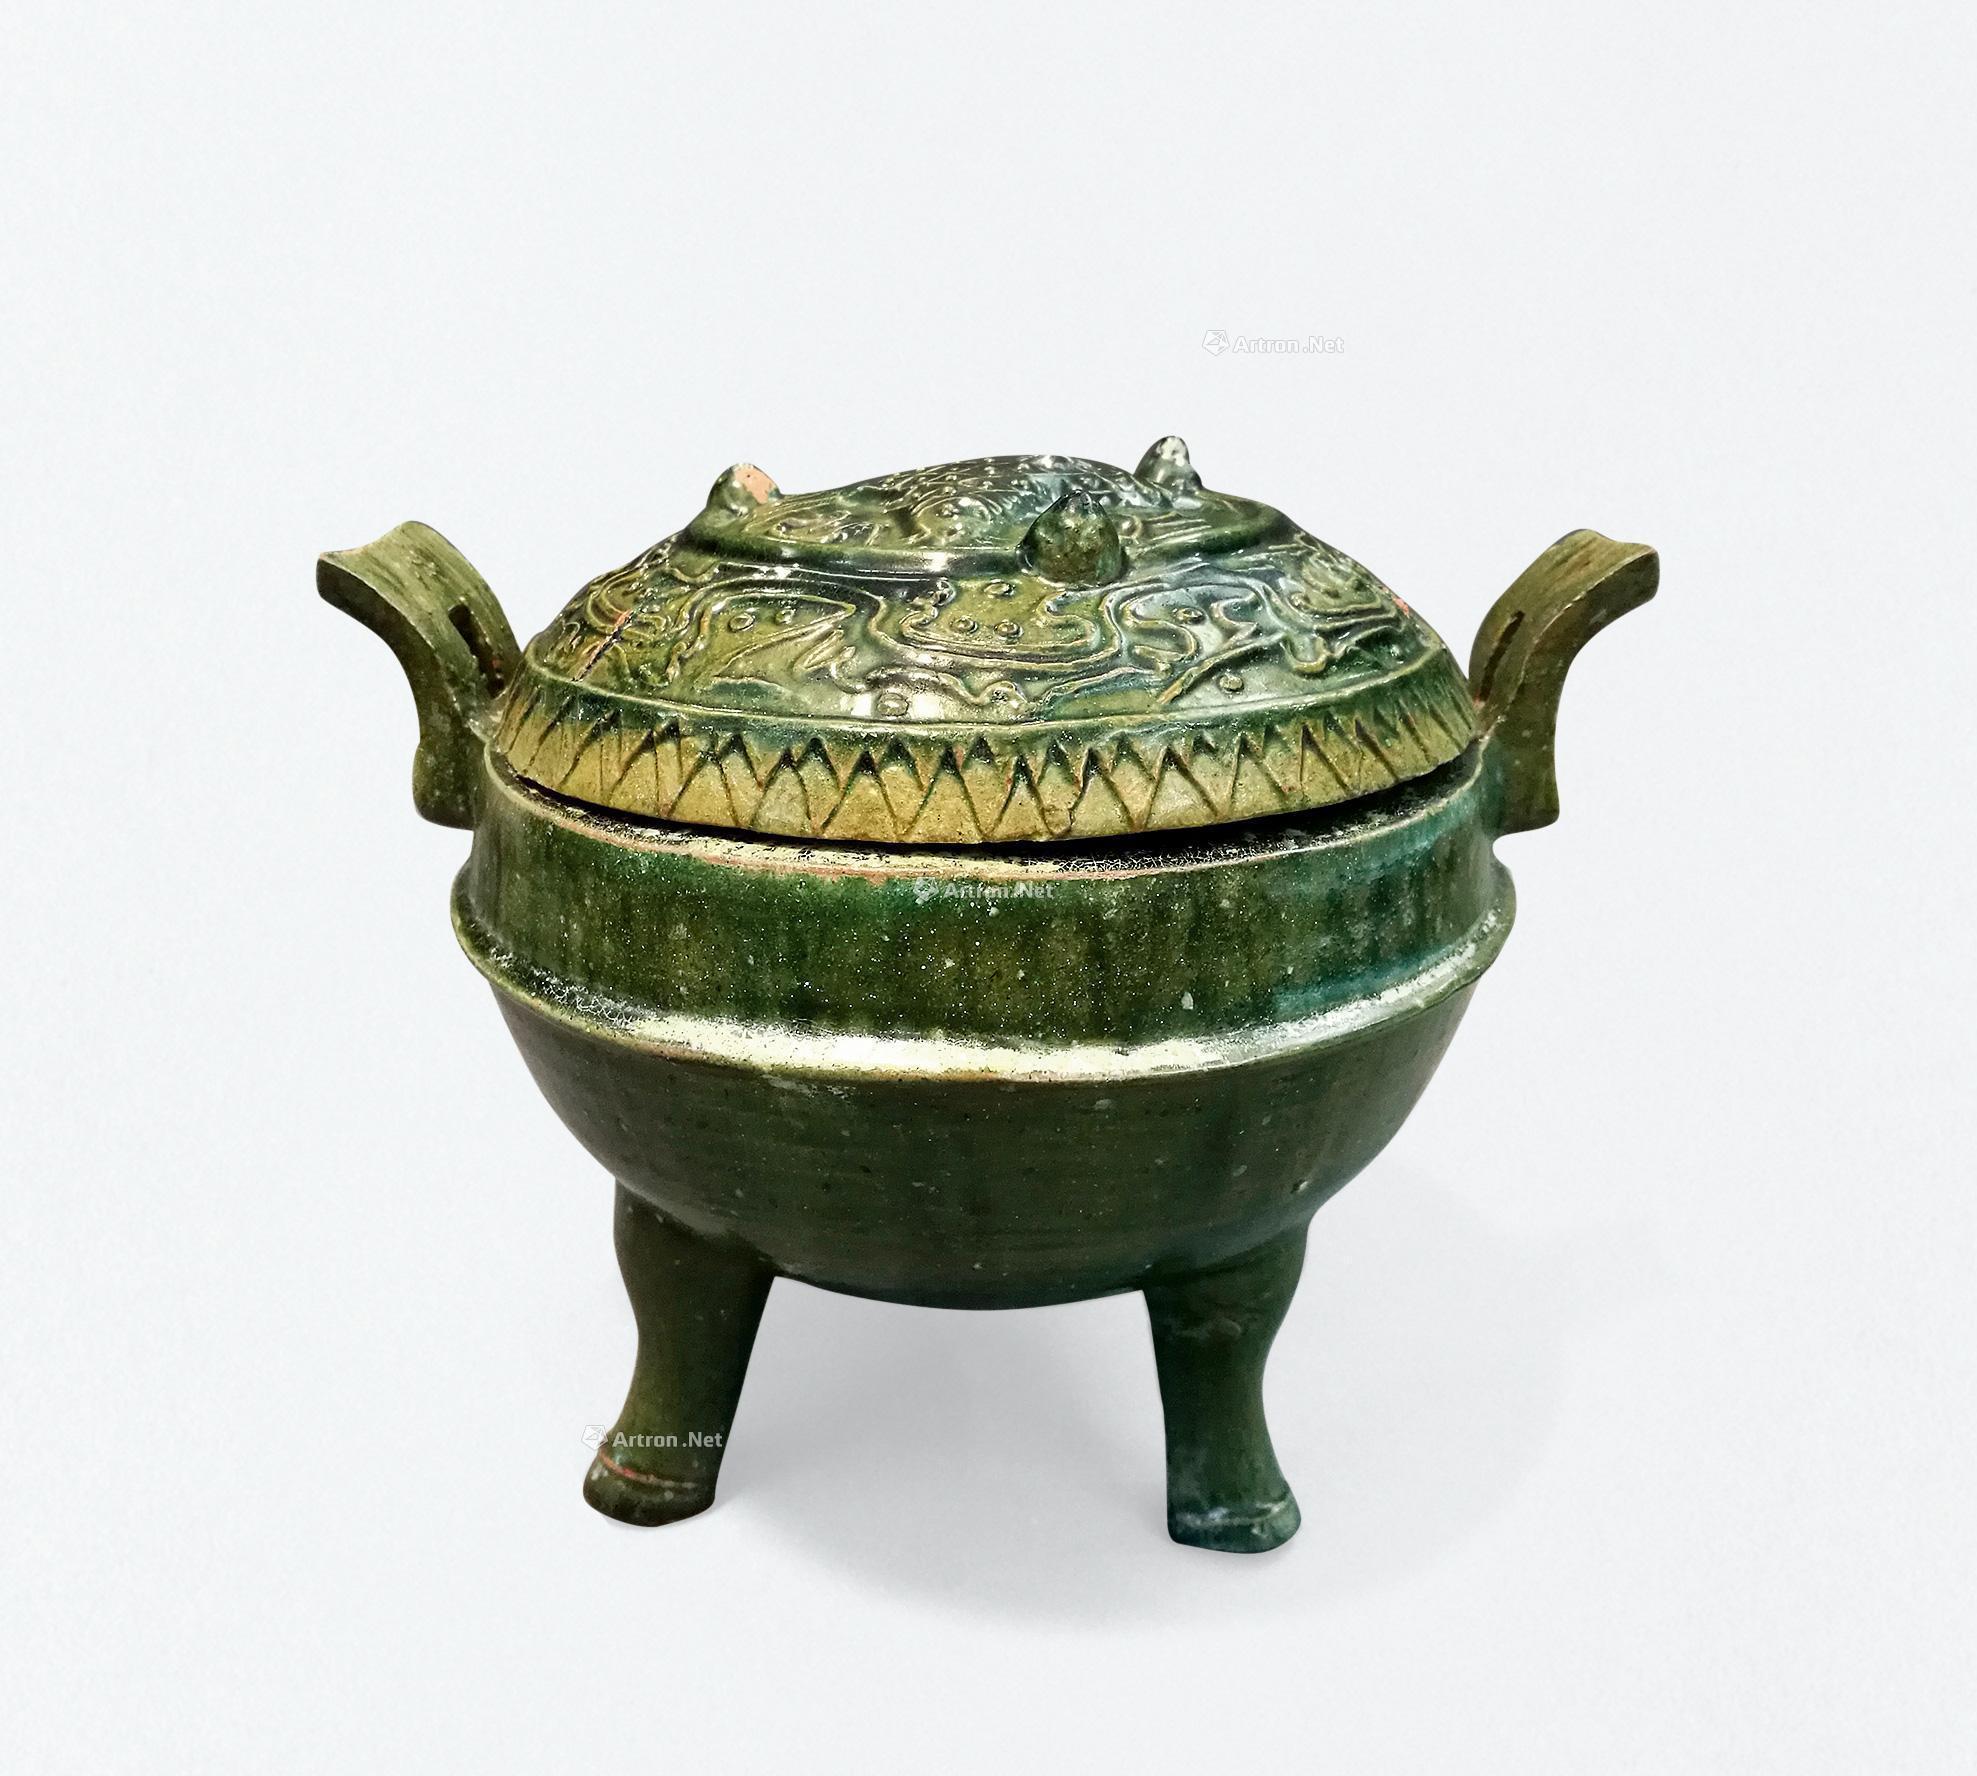 故宫陶瓷馆明重张，它们娓娓道来中国陶瓷8千年_京报网